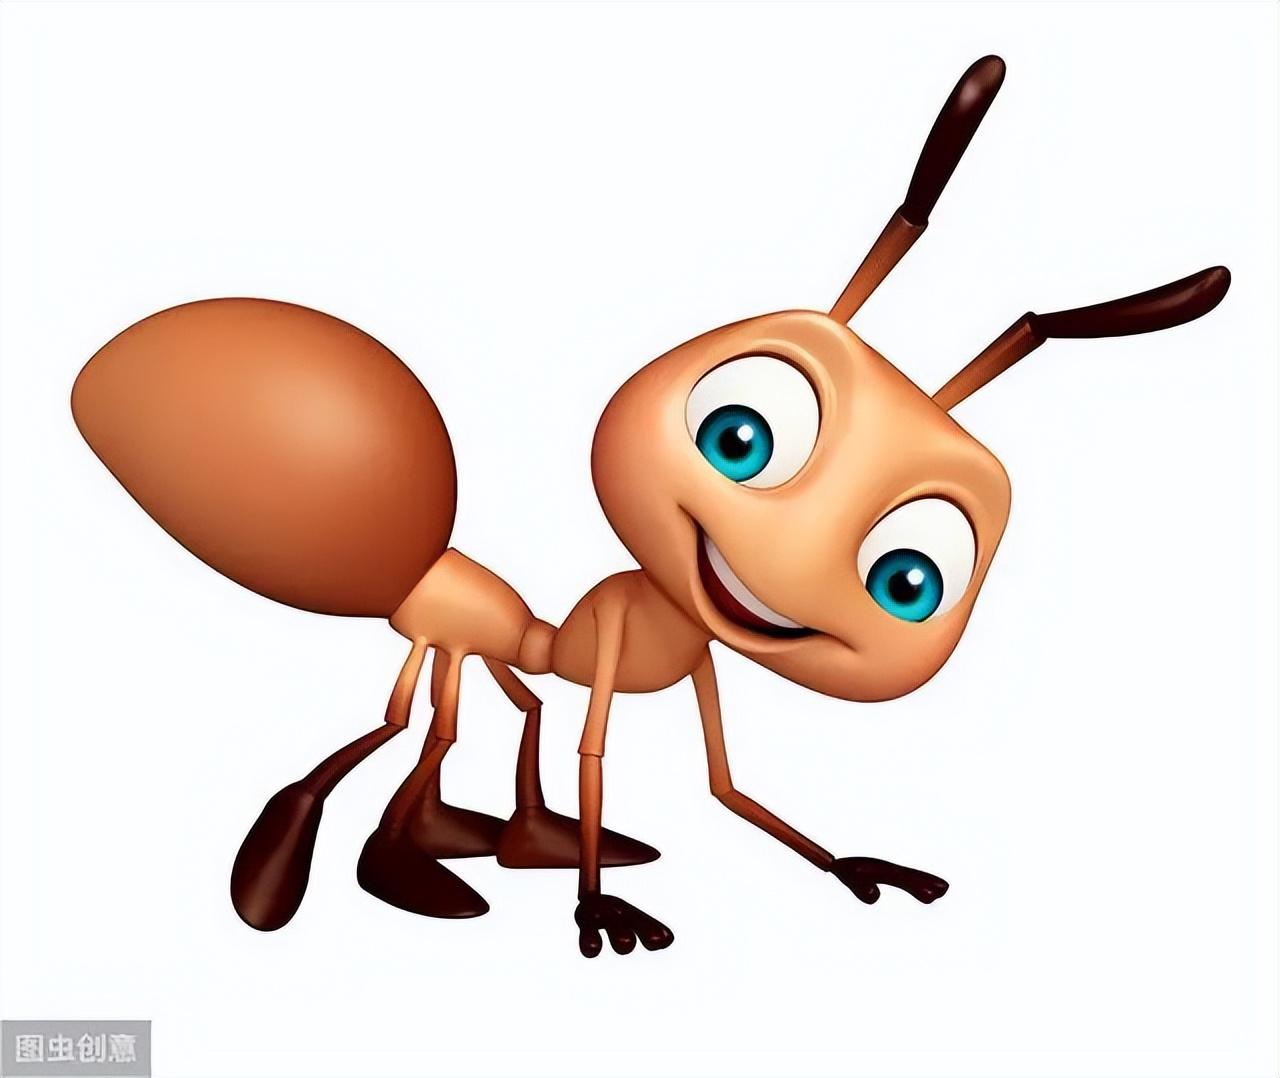 蚂蚁意识不到人类的存在，就像人类意识不到高级外星文明的存在？